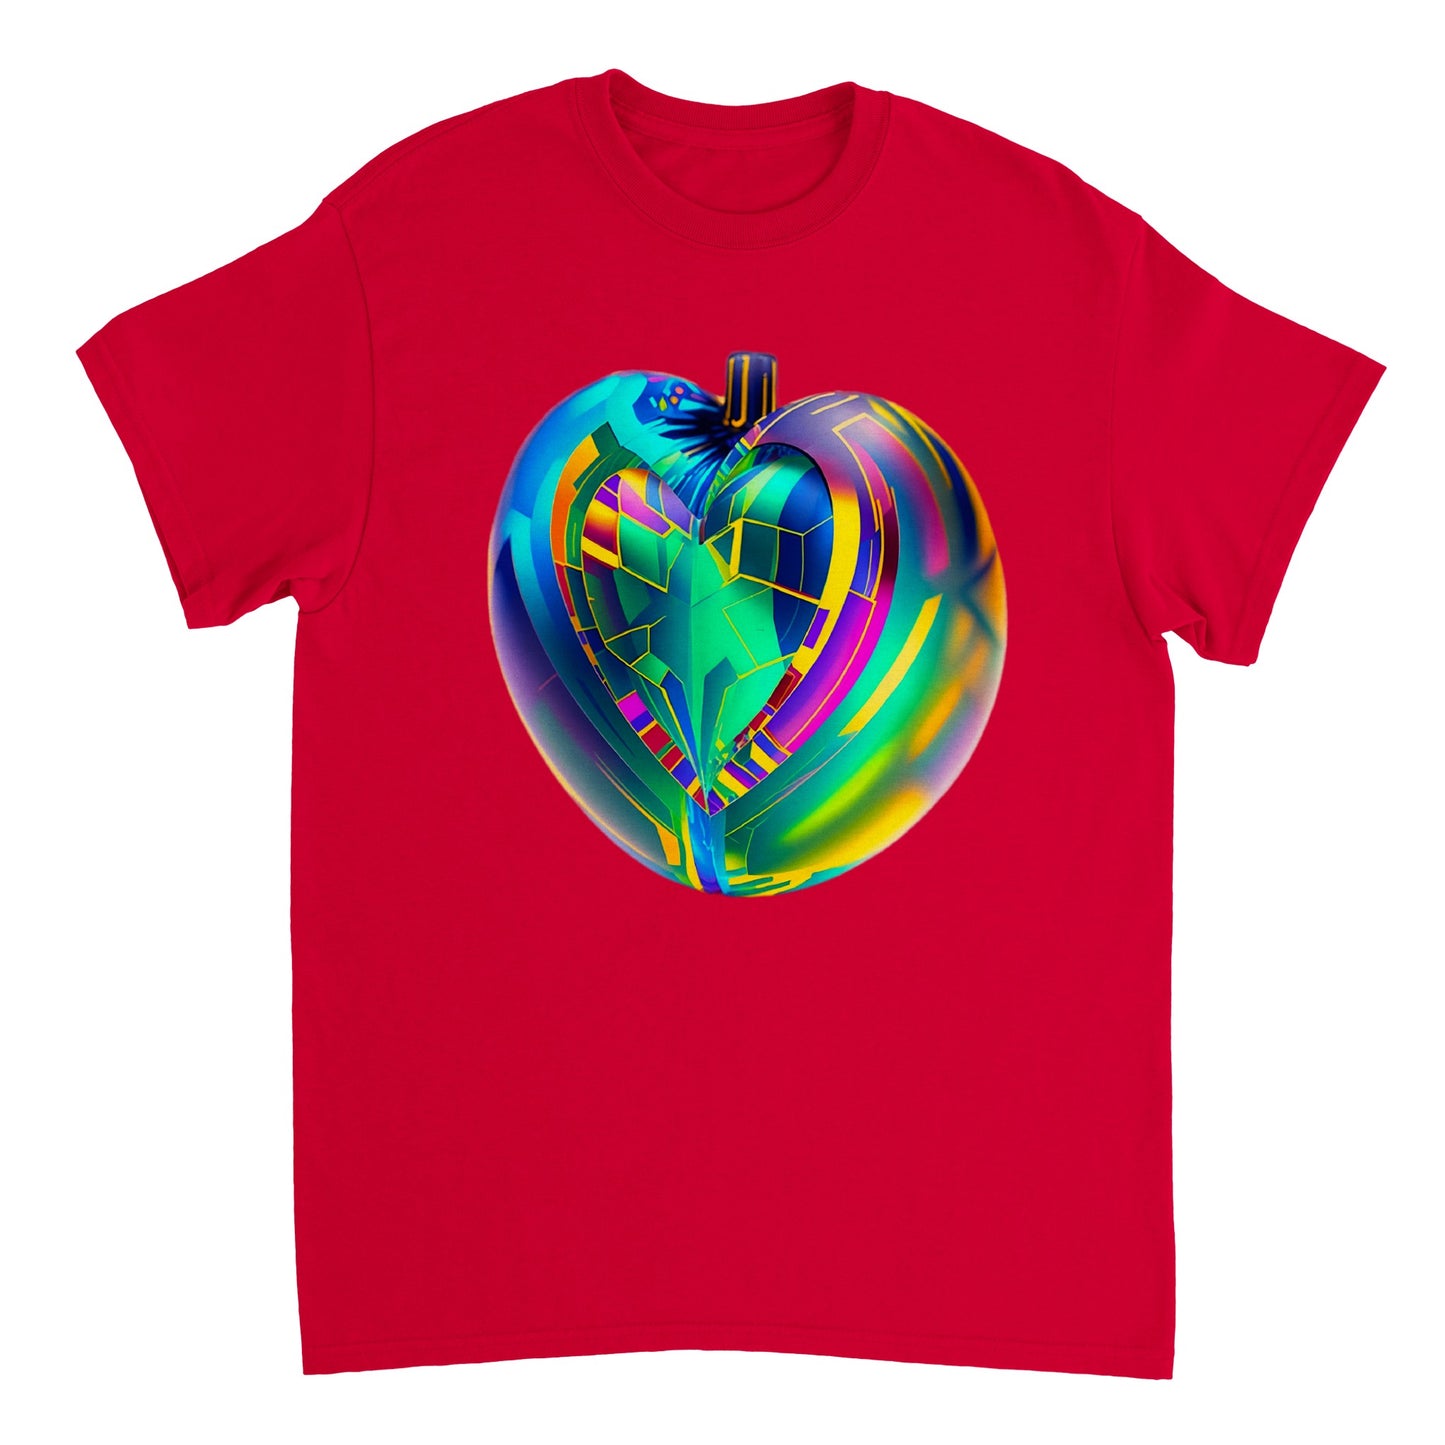 Love Heart - Heavyweight Unisex Crewneck T-shirt 69